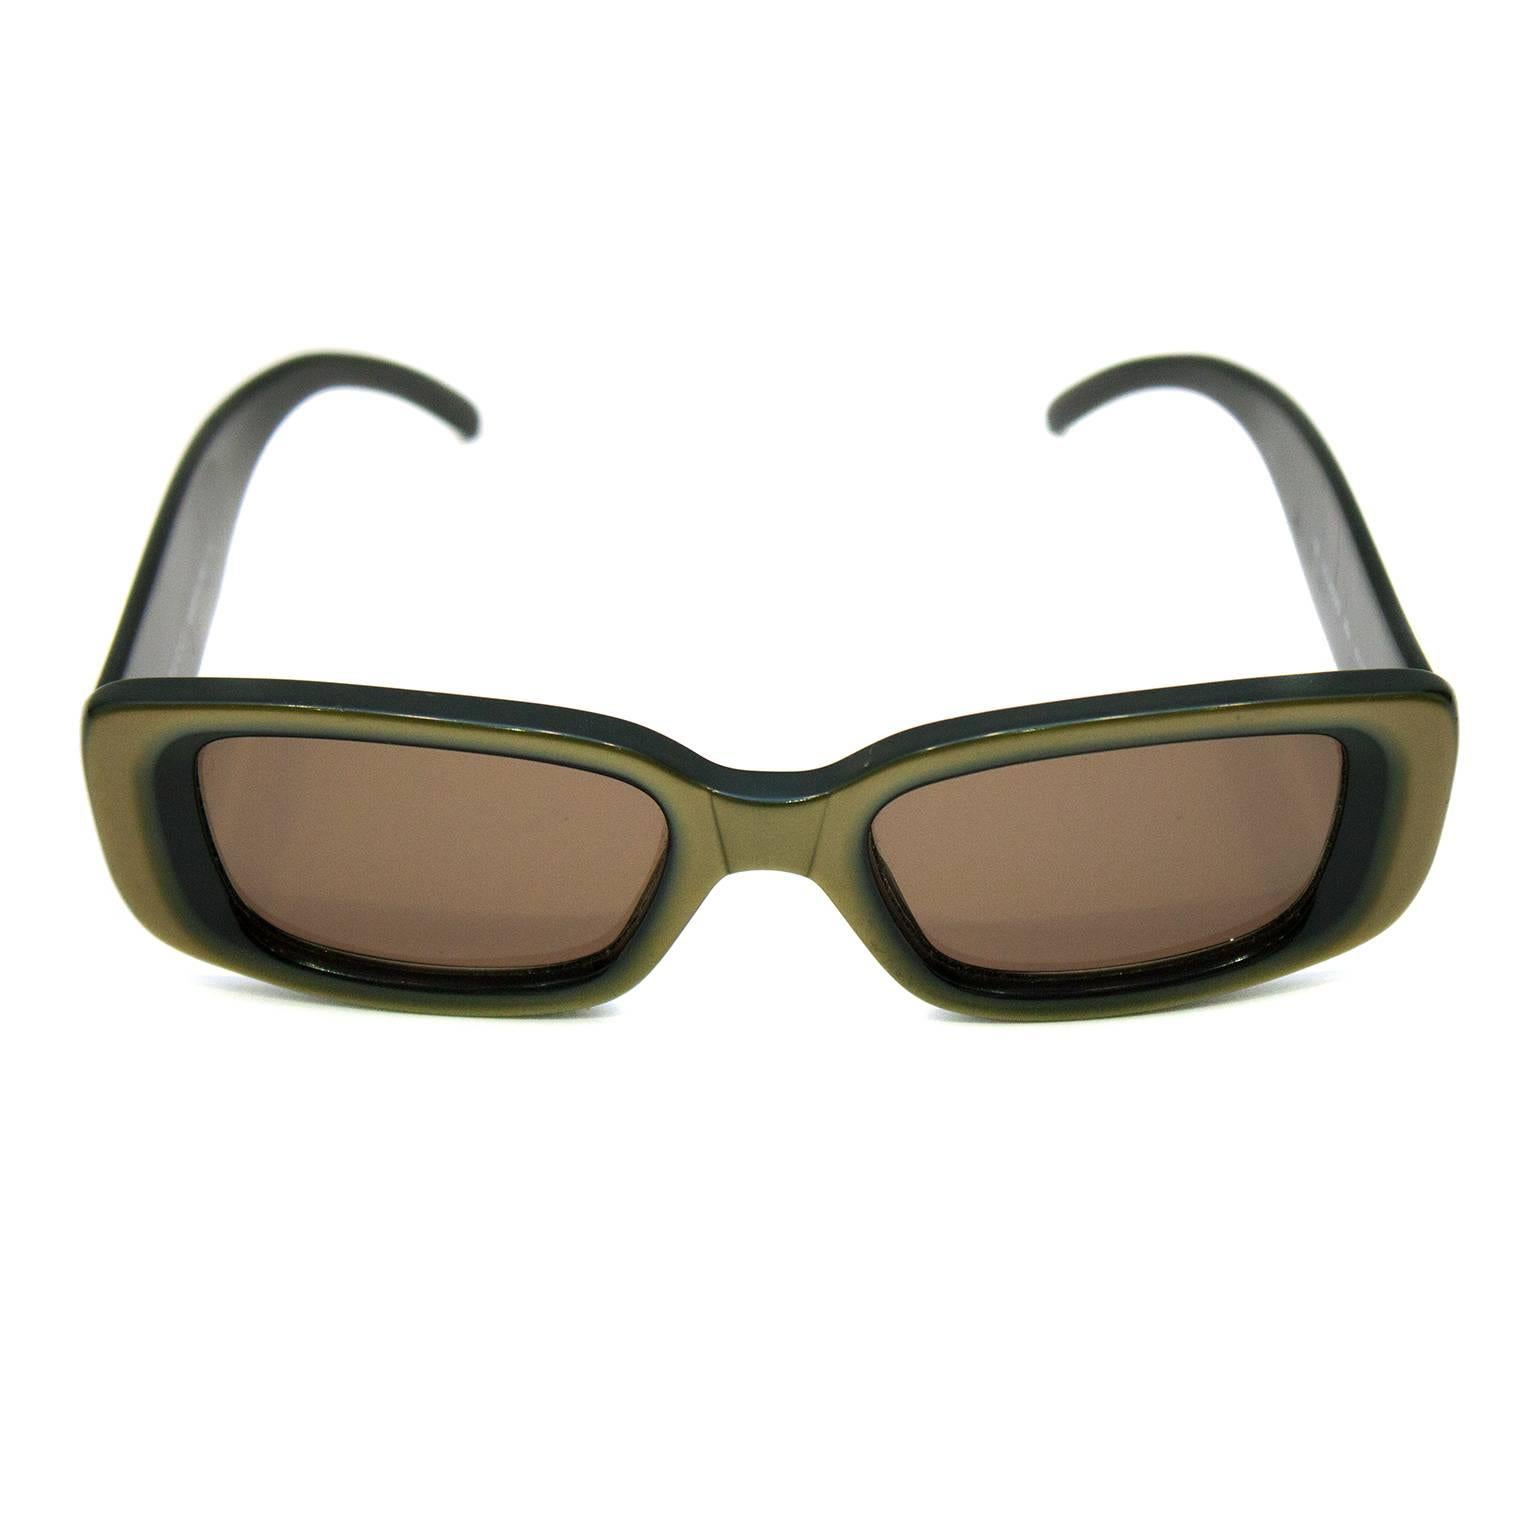 1990s olive green gucci sunglasses